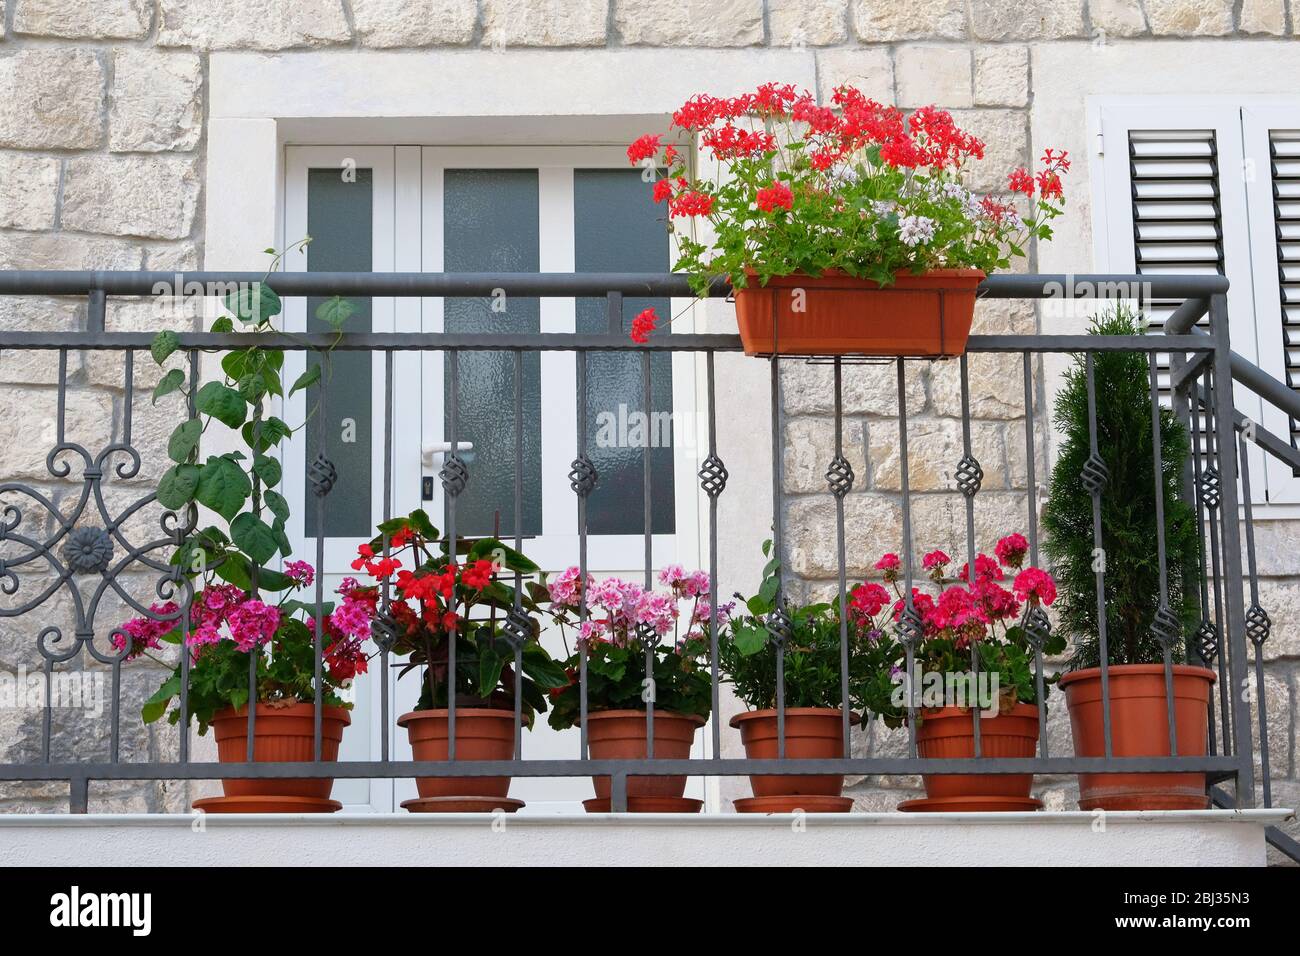 Töpfe mit Büschen blühender Pflanzen auf dem Balkon. Querformat. Geranie und andere dekorative Blumen. Büsche mit roten und lila Blüten in Töpfen. Stockfoto